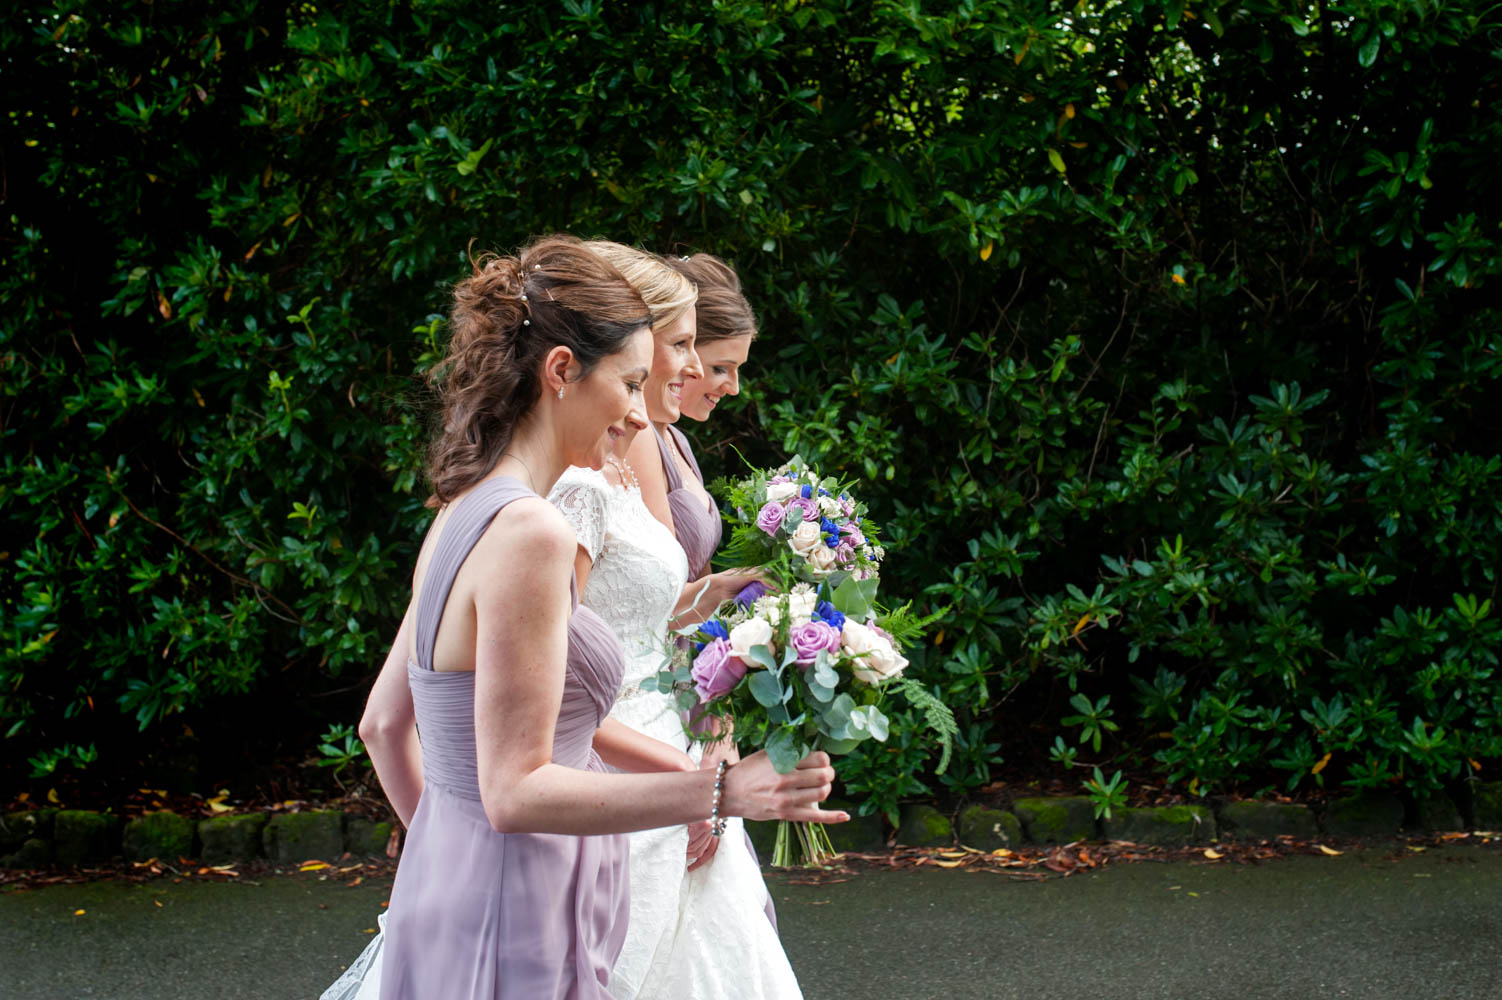 Bride and bridesmaids walking